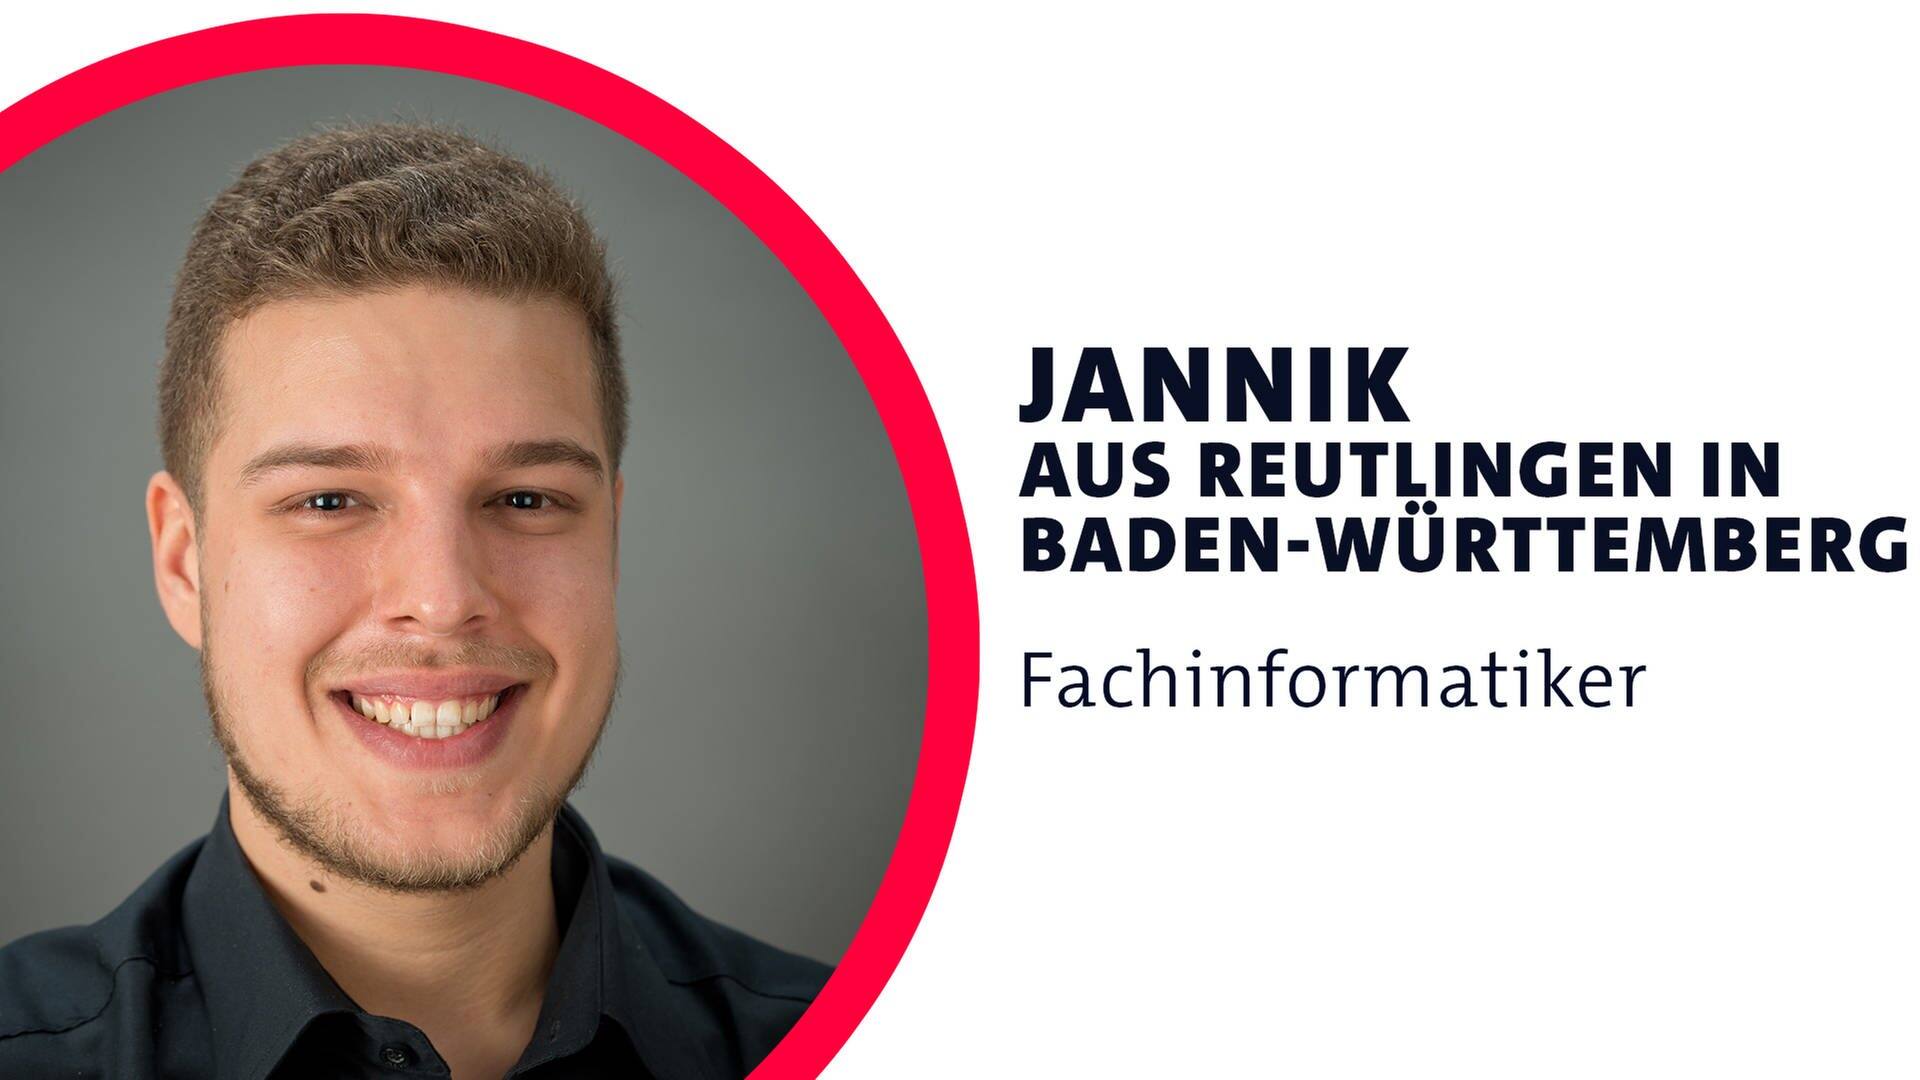 Jannik arbeitet als Fachinformatiker (Foto: SWR3, Fotograf: Rainer Deuschle Digitale Bildbearbeitung)